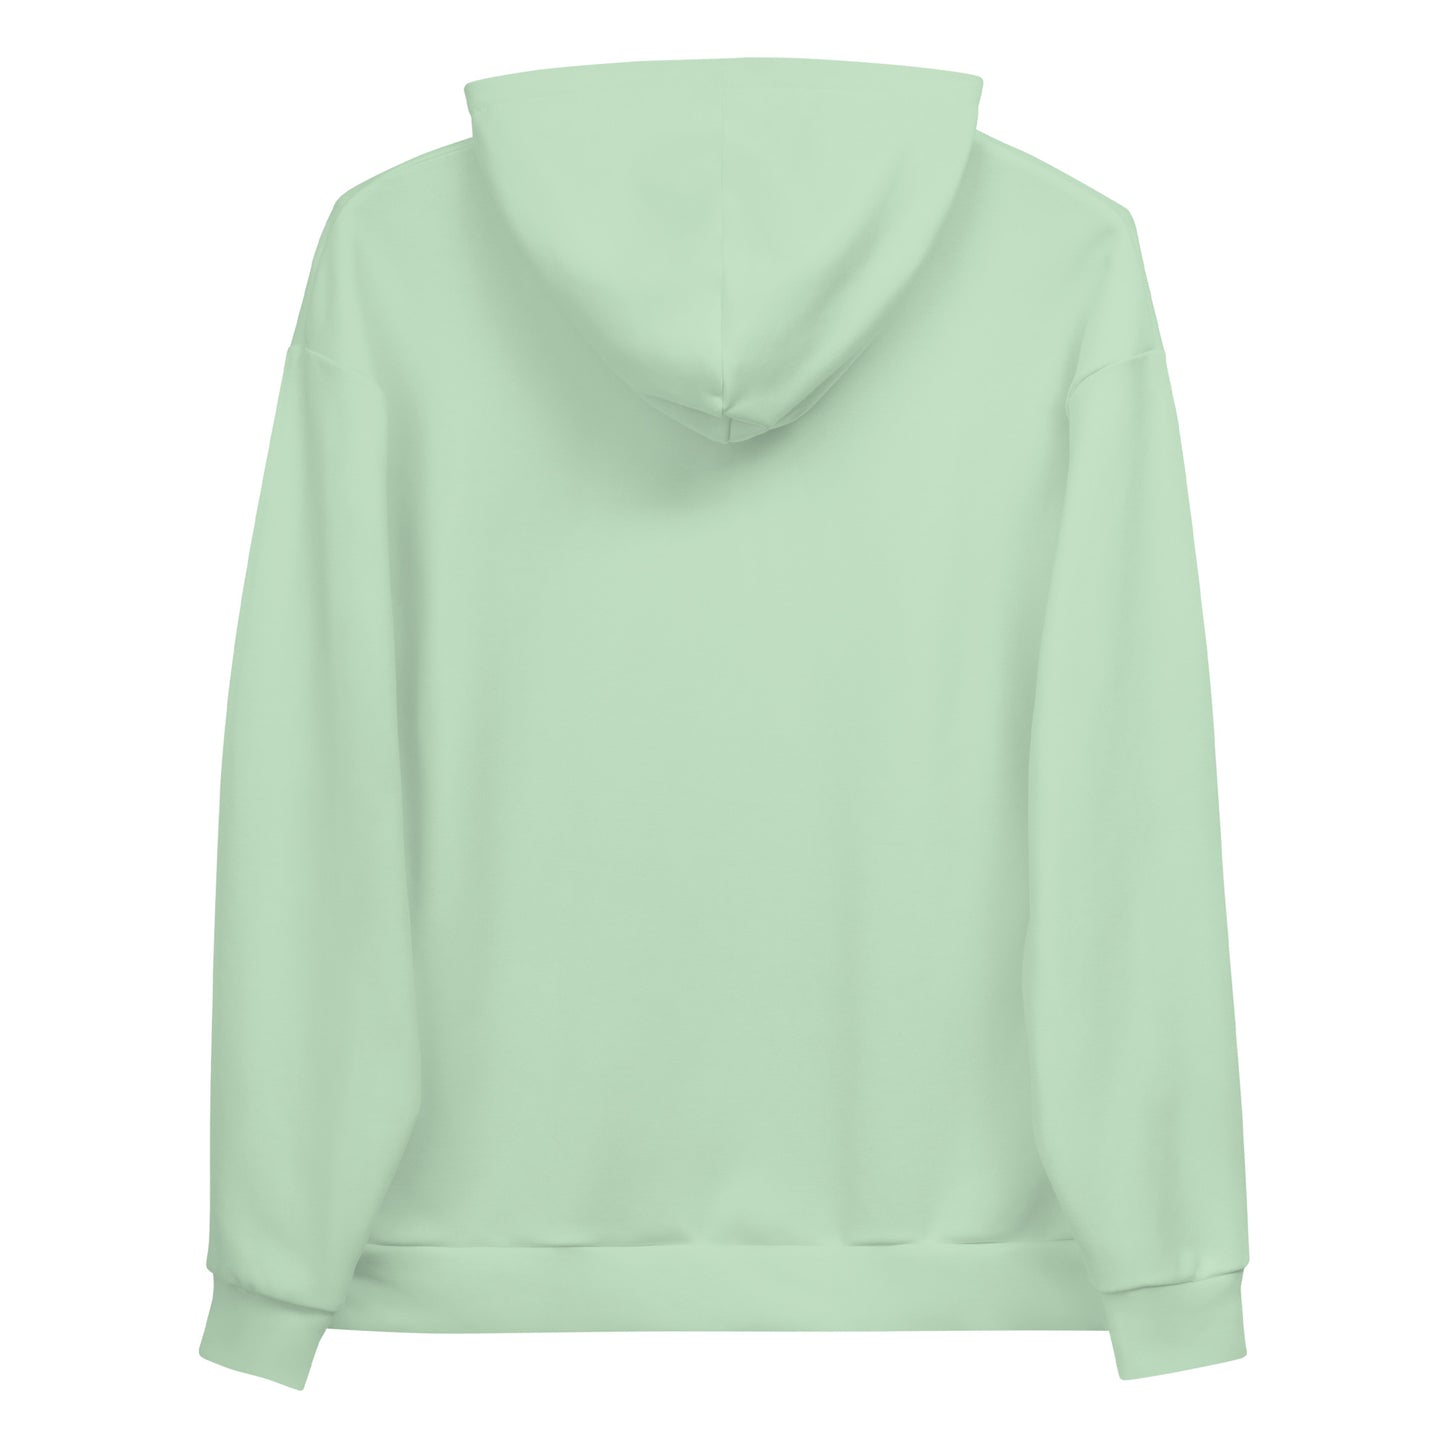 Humble Sportswear™ Women's Mint Green Fleece Pullover Hoodie - Mireille Fine Art